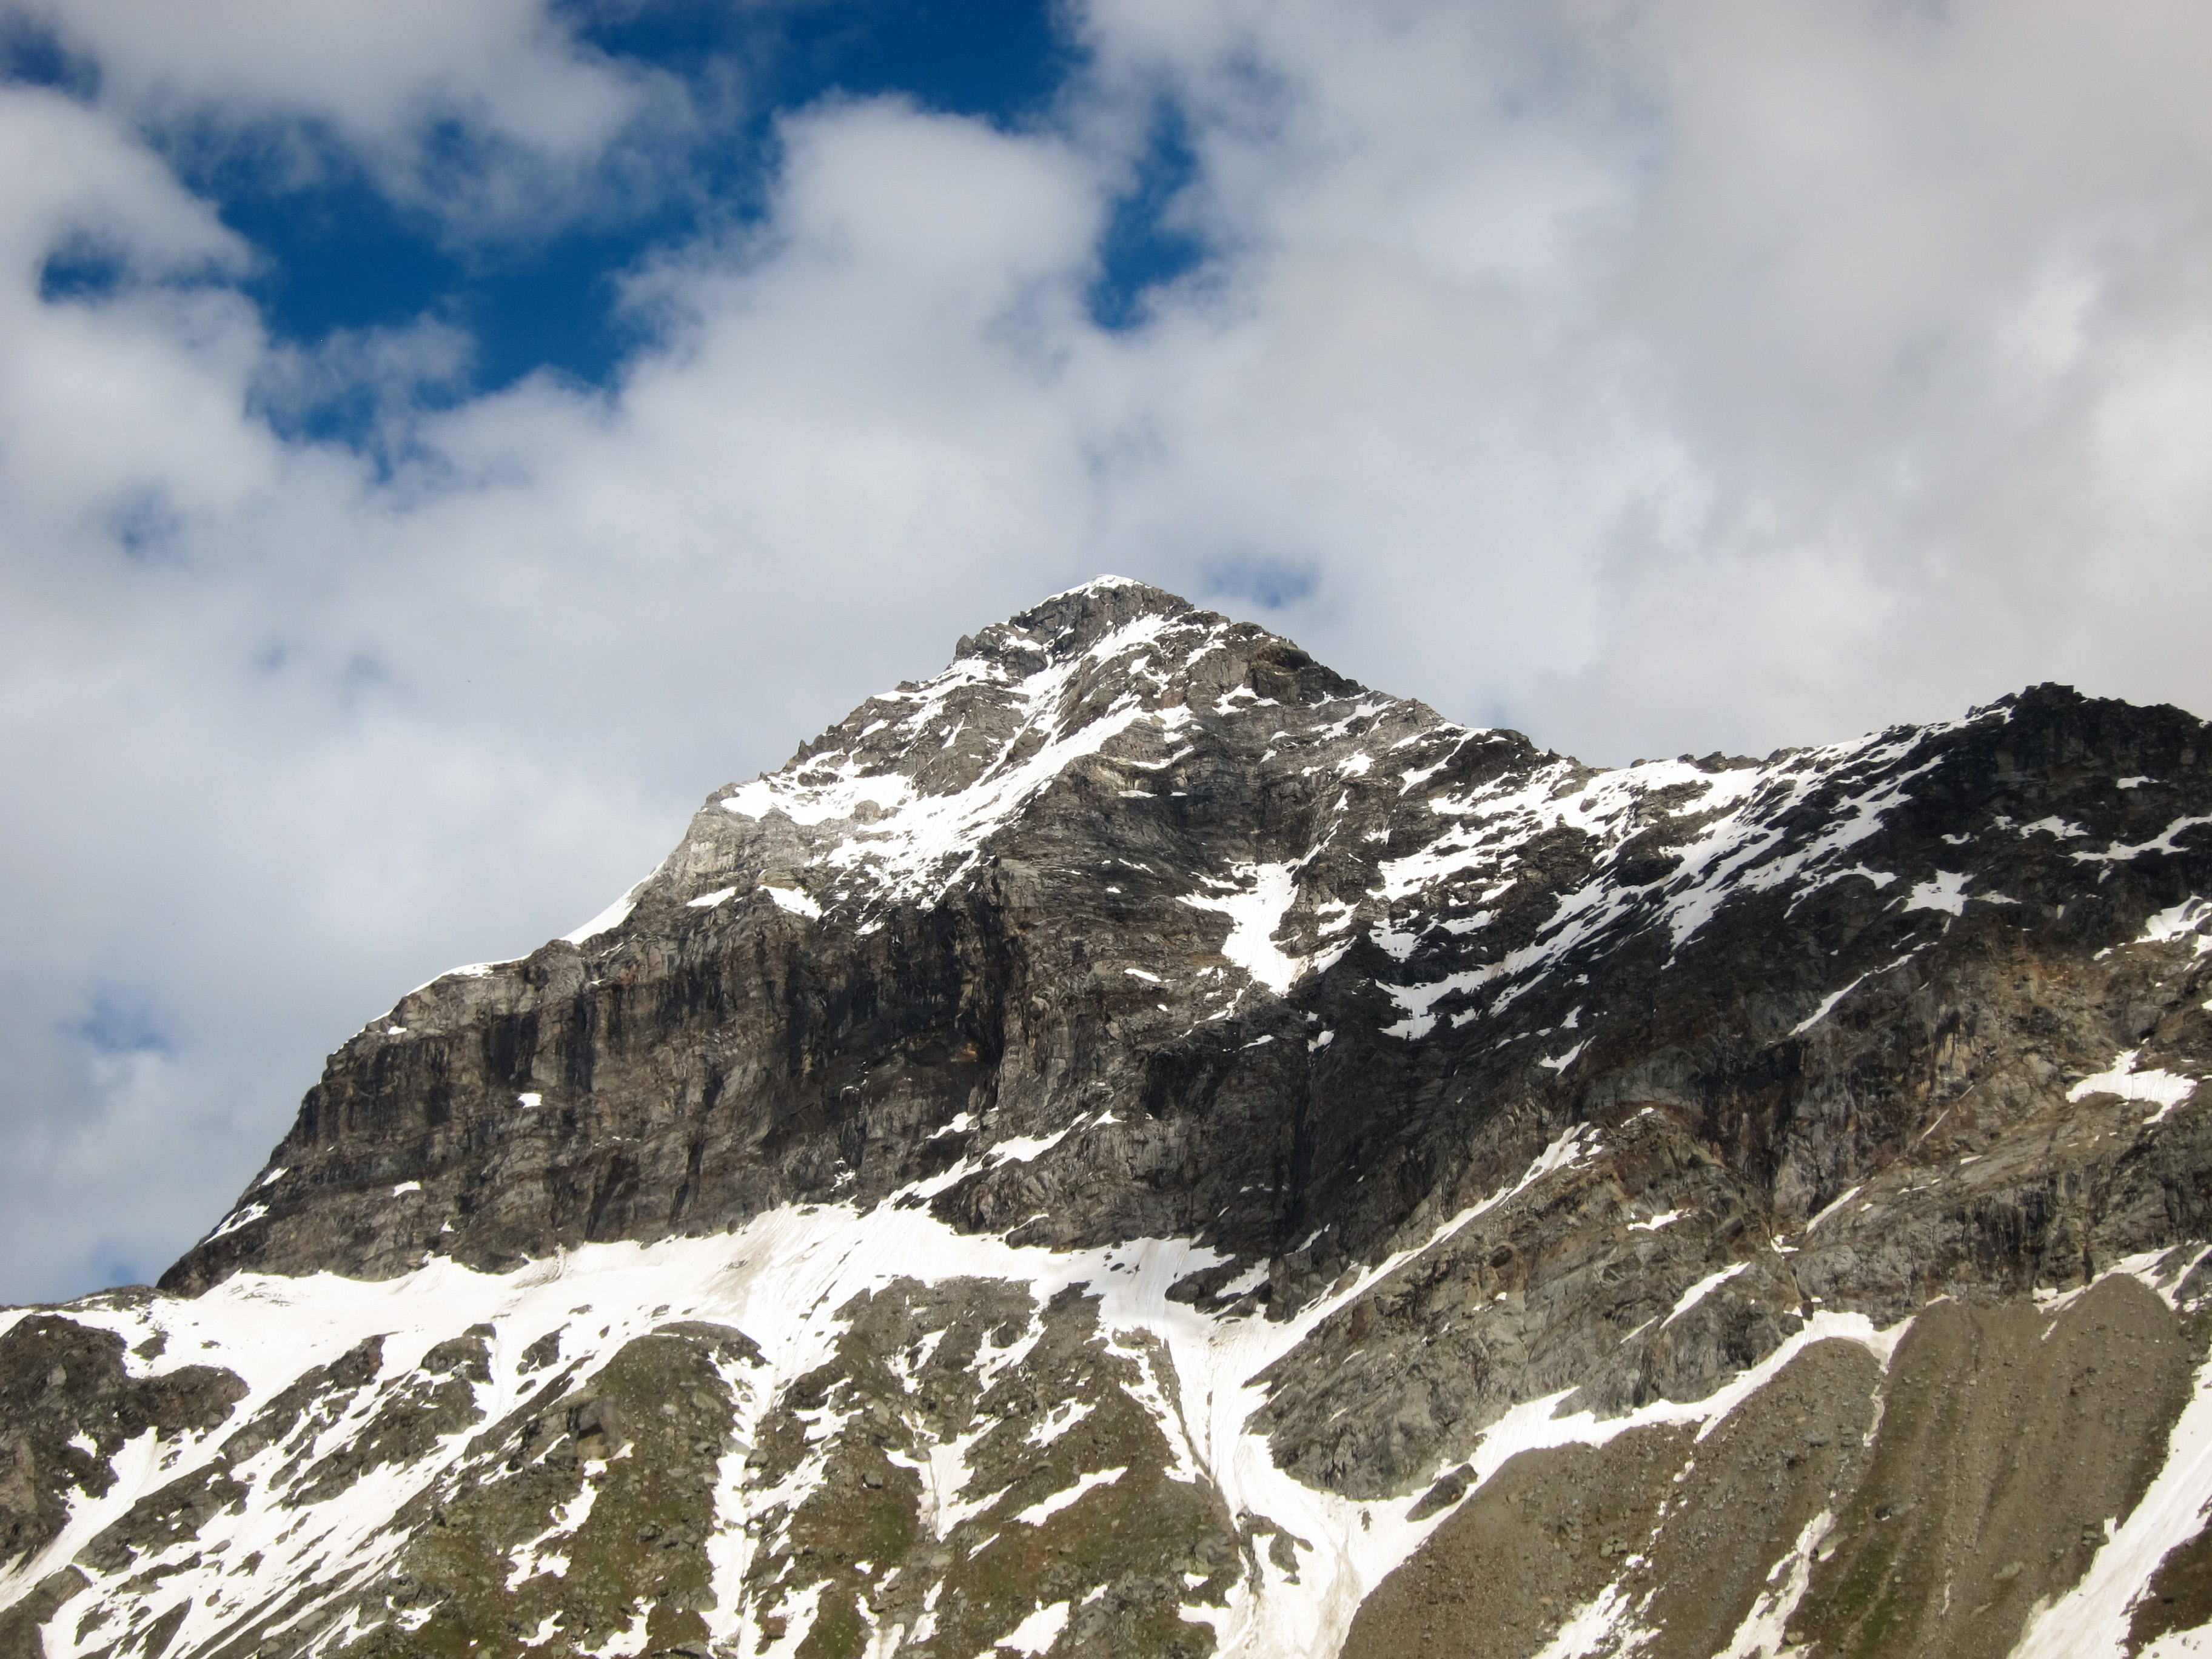 Dettaglio cima del Pizzo Scalino (3.323 m s.l.m.) in Valmalenco, Sondrio, Lombardia, Italy. 2018-06-09